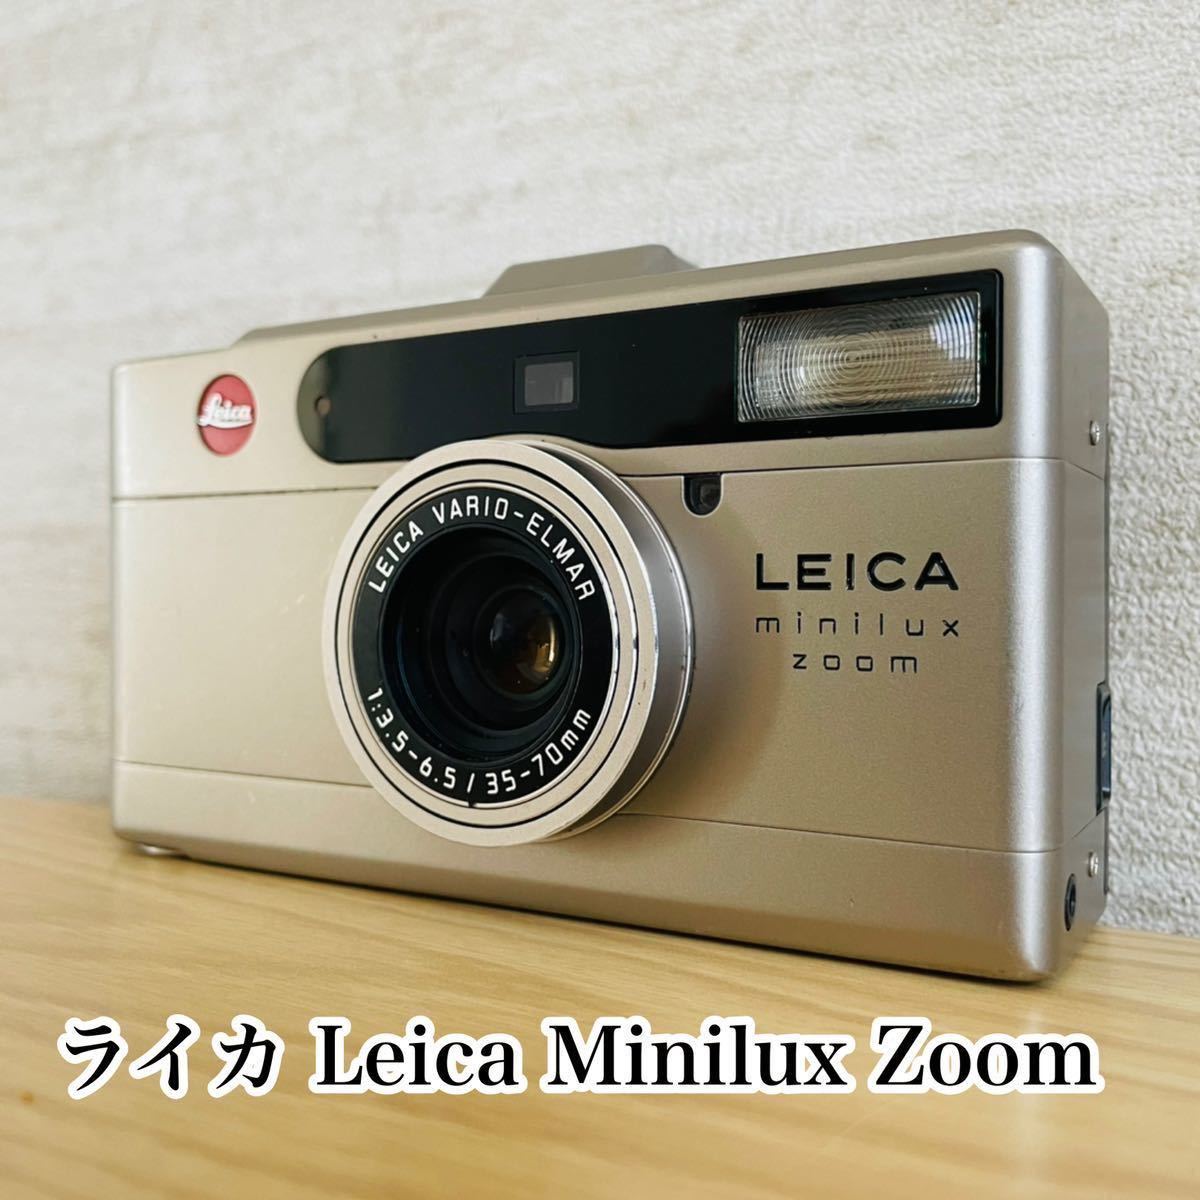 ◇修復や部品取りに最適☆ライカ Leica Minilux Zoom ミニルックス